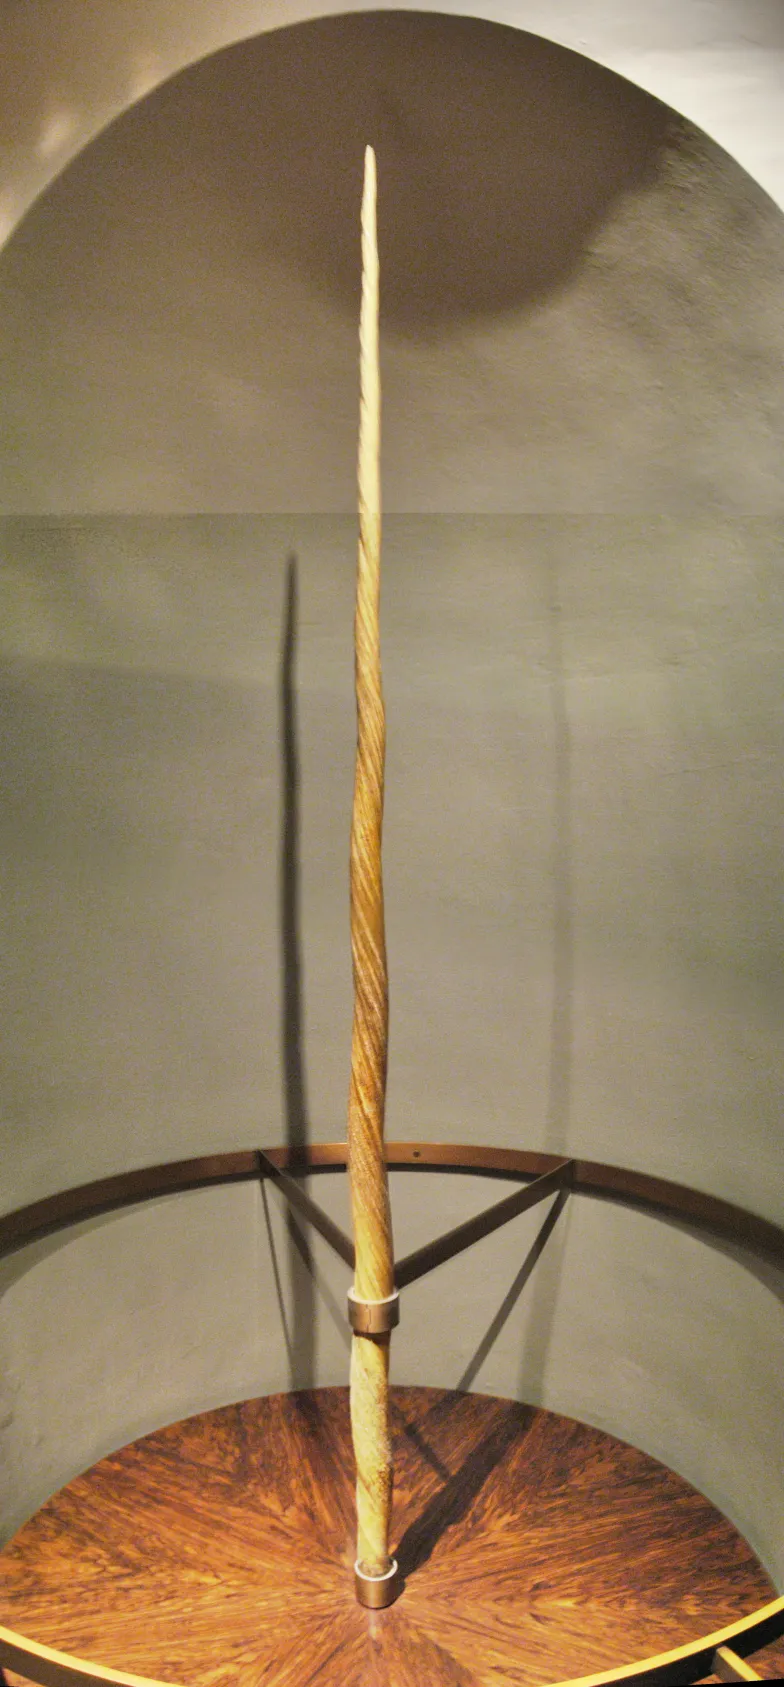 Róg "jednorożca" (narwala), dar Zygmunta Starego dla Ferdynanda I Habsburga, Kunsthistorisches Museum w Wiedniu / Wikimedia